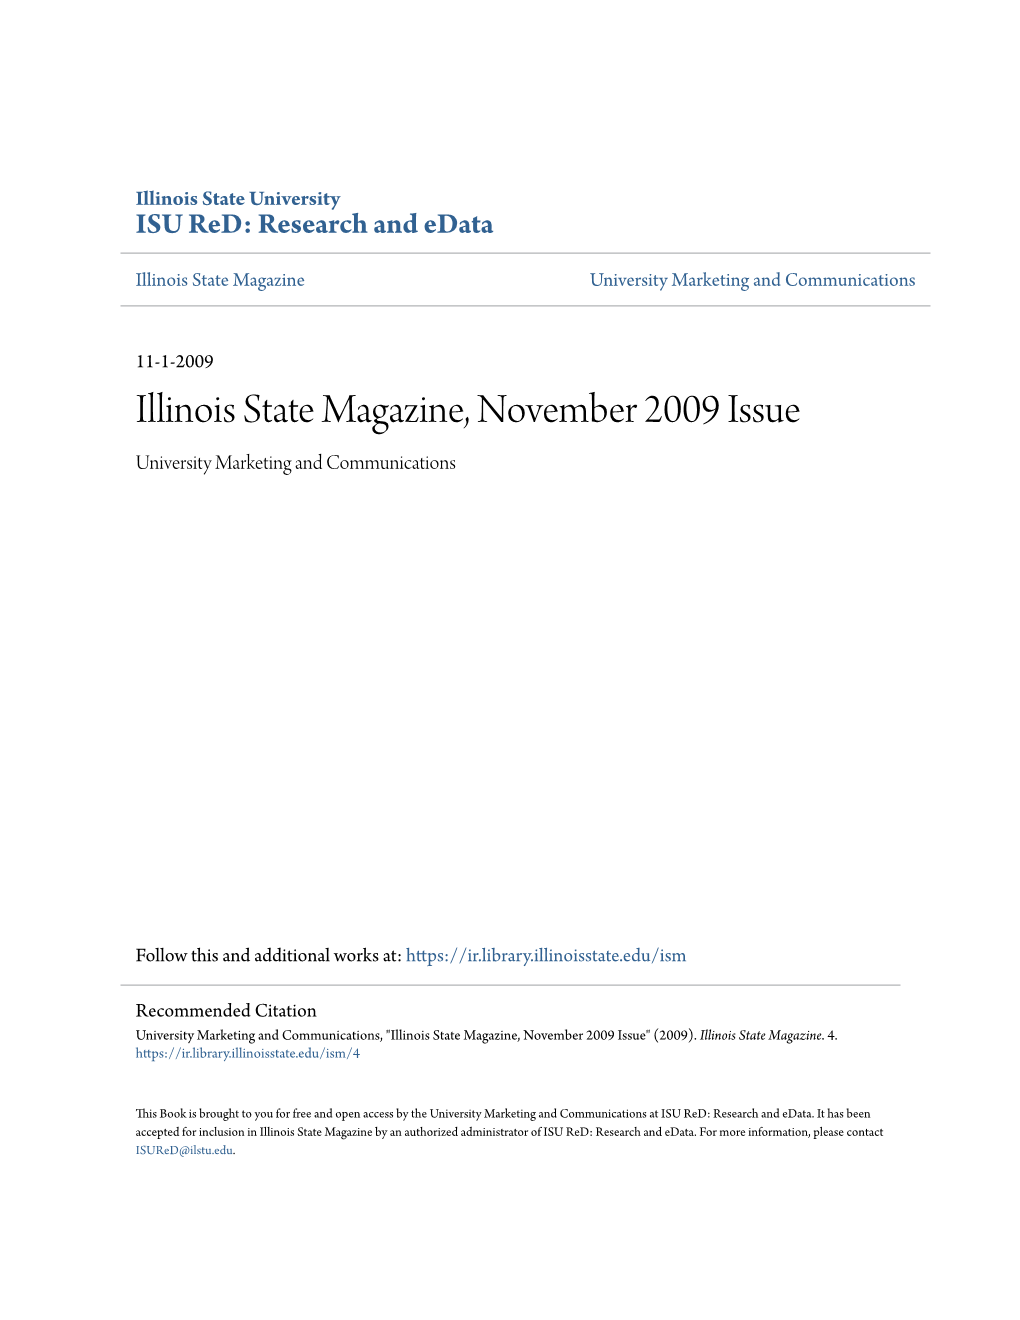 Illinois State Magazine, November 2009 Issue University Marketing and Communications